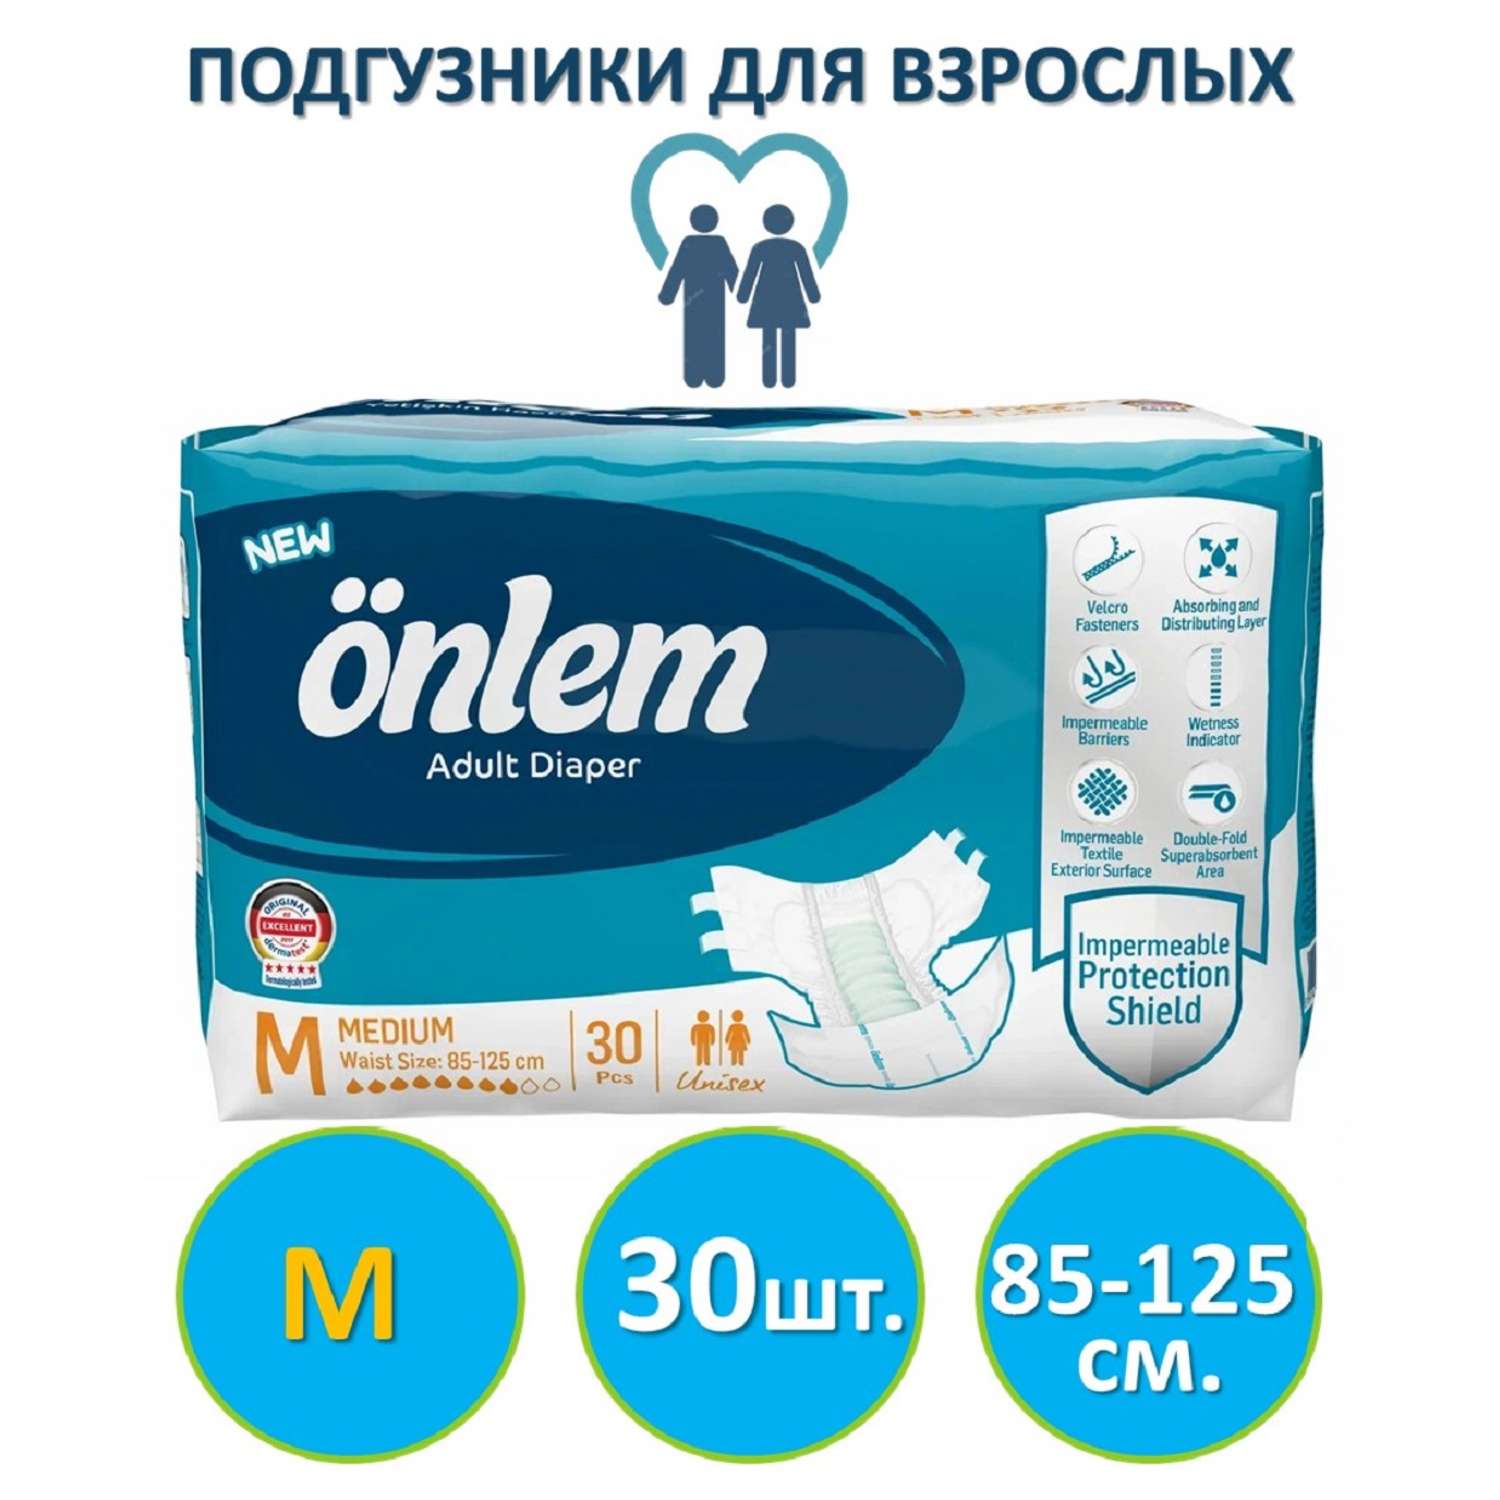 Подгузники для взрослых Onlem размер М (85-125cм.) 30 шт. в упаковке - фото 1